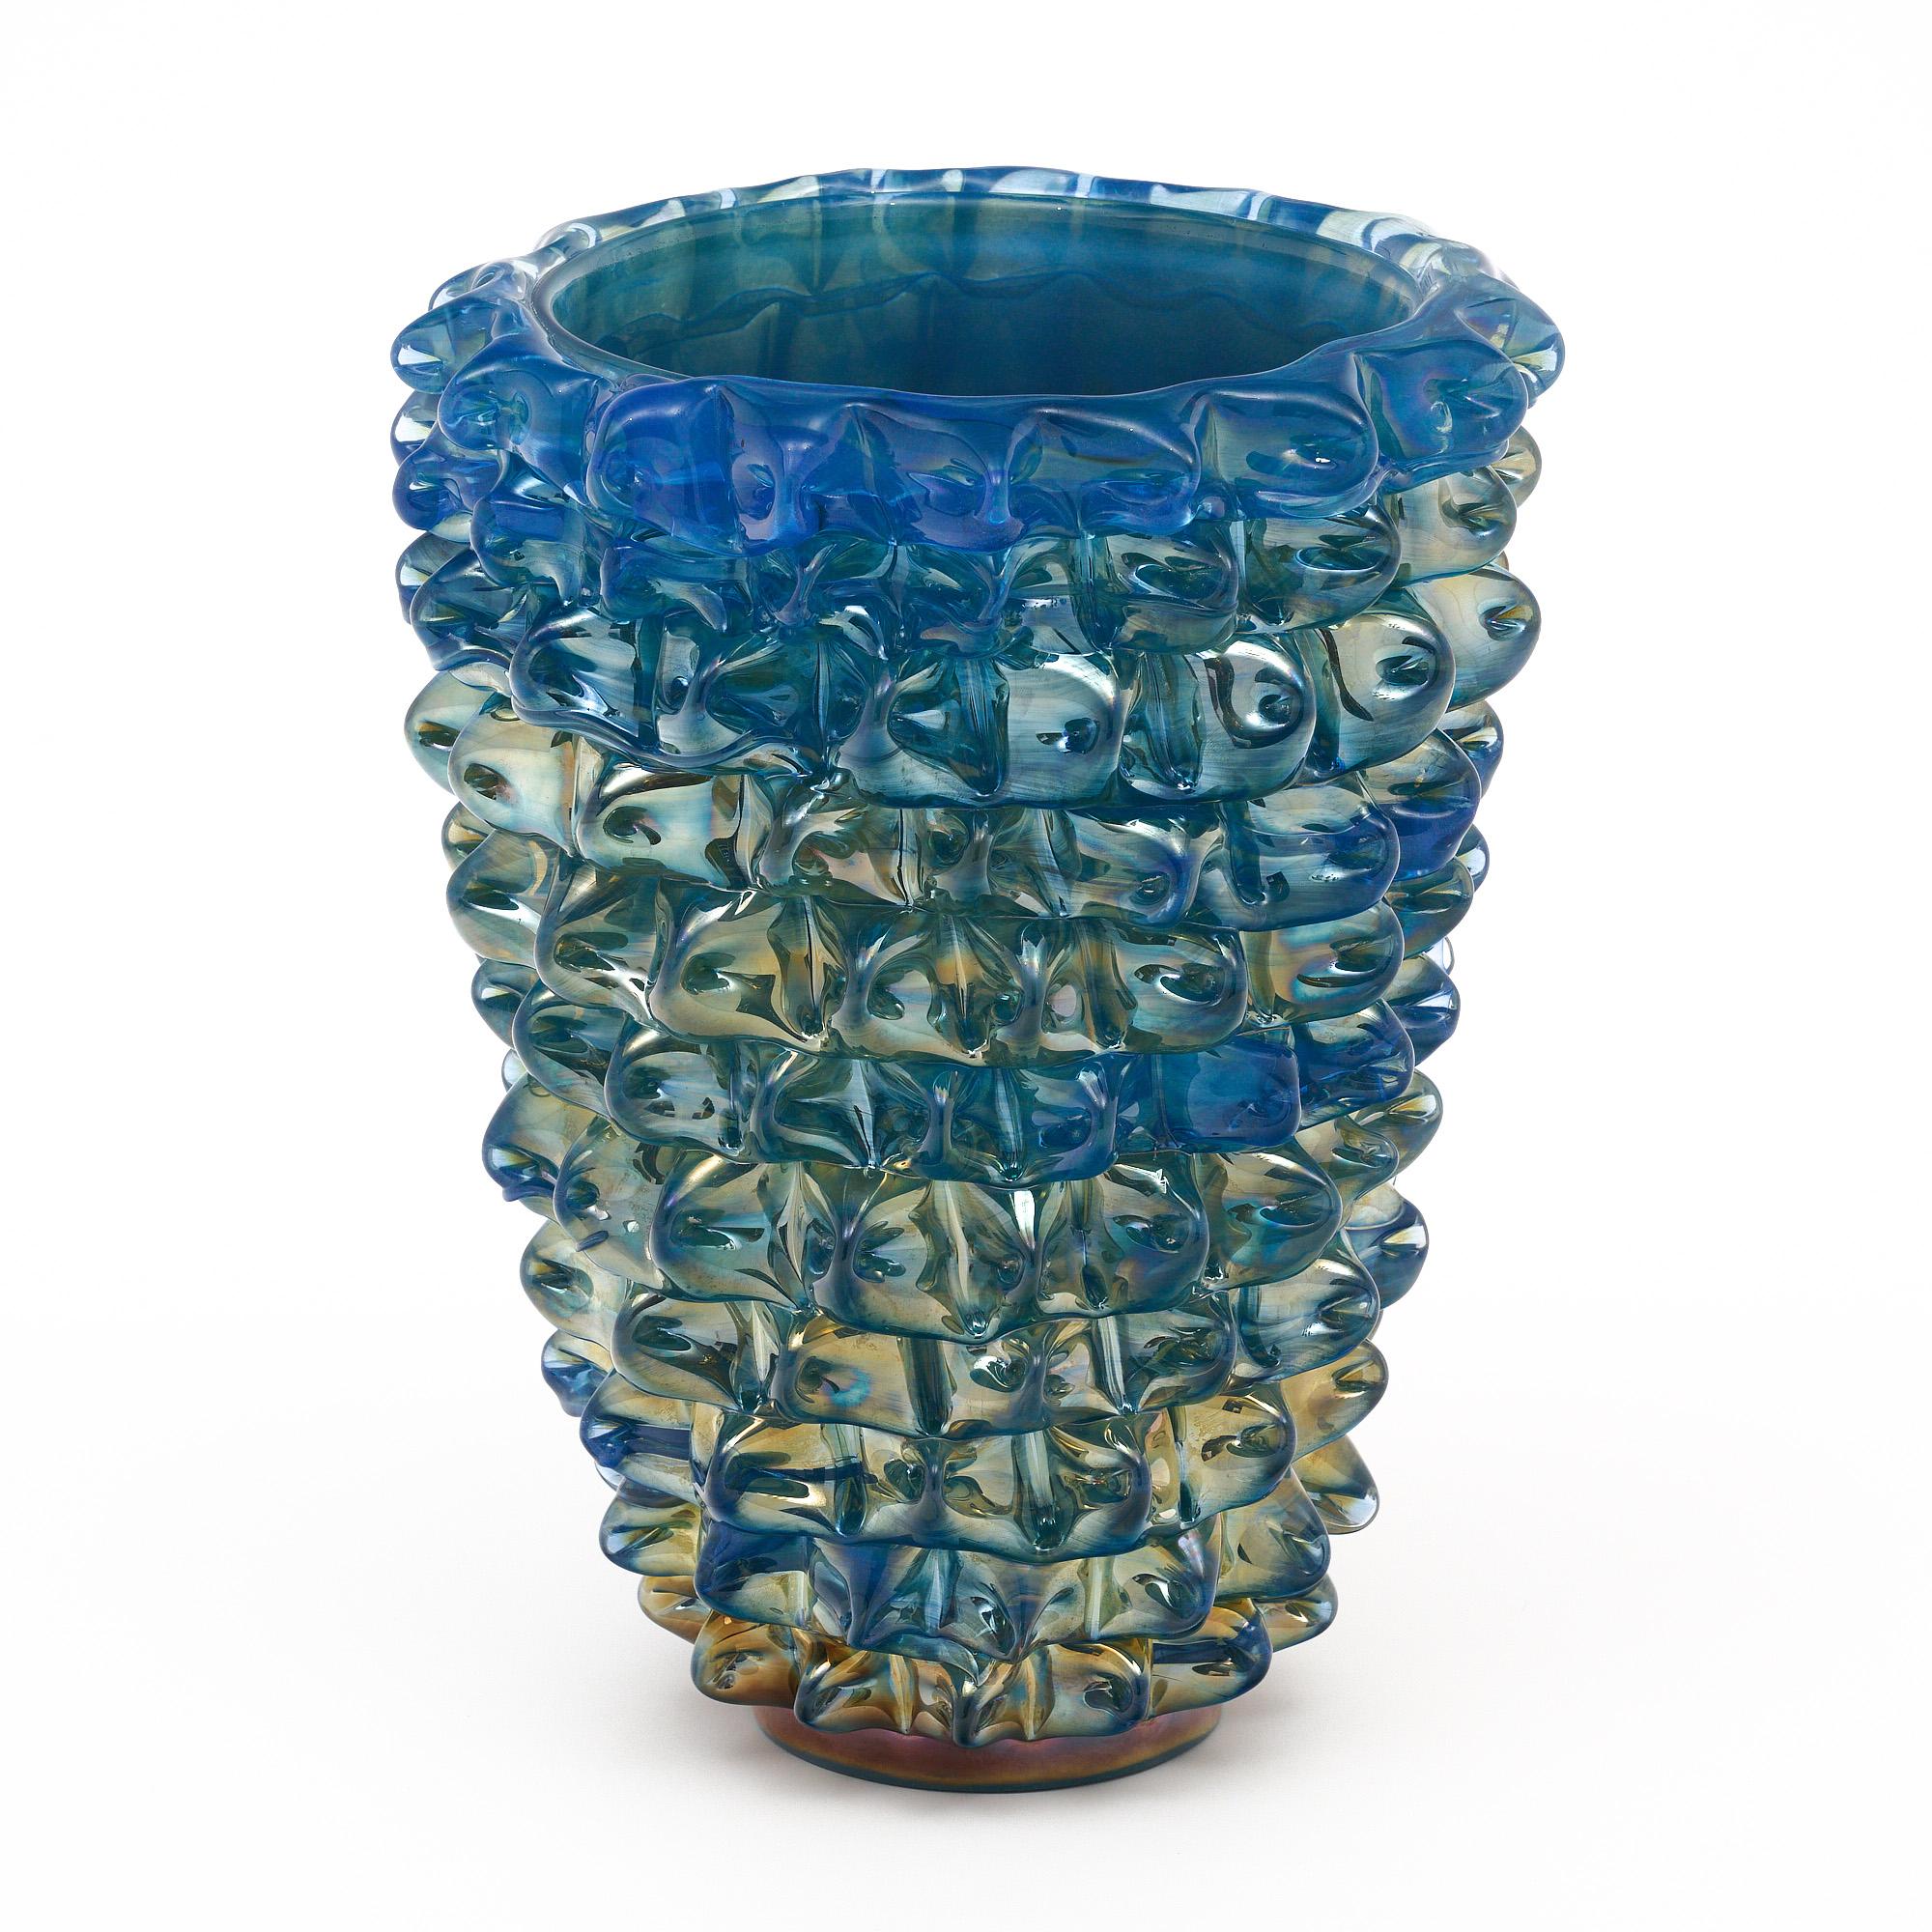 Vase en verre de Murano, italien, provenant de l'île de Murano et fabriqué à la manière de Barovier. Cette pièce soufflée à la main est réalisée selon la technique de l'incamiciato, qui consiste à utiliser plusieurs couches de couleurs différentes